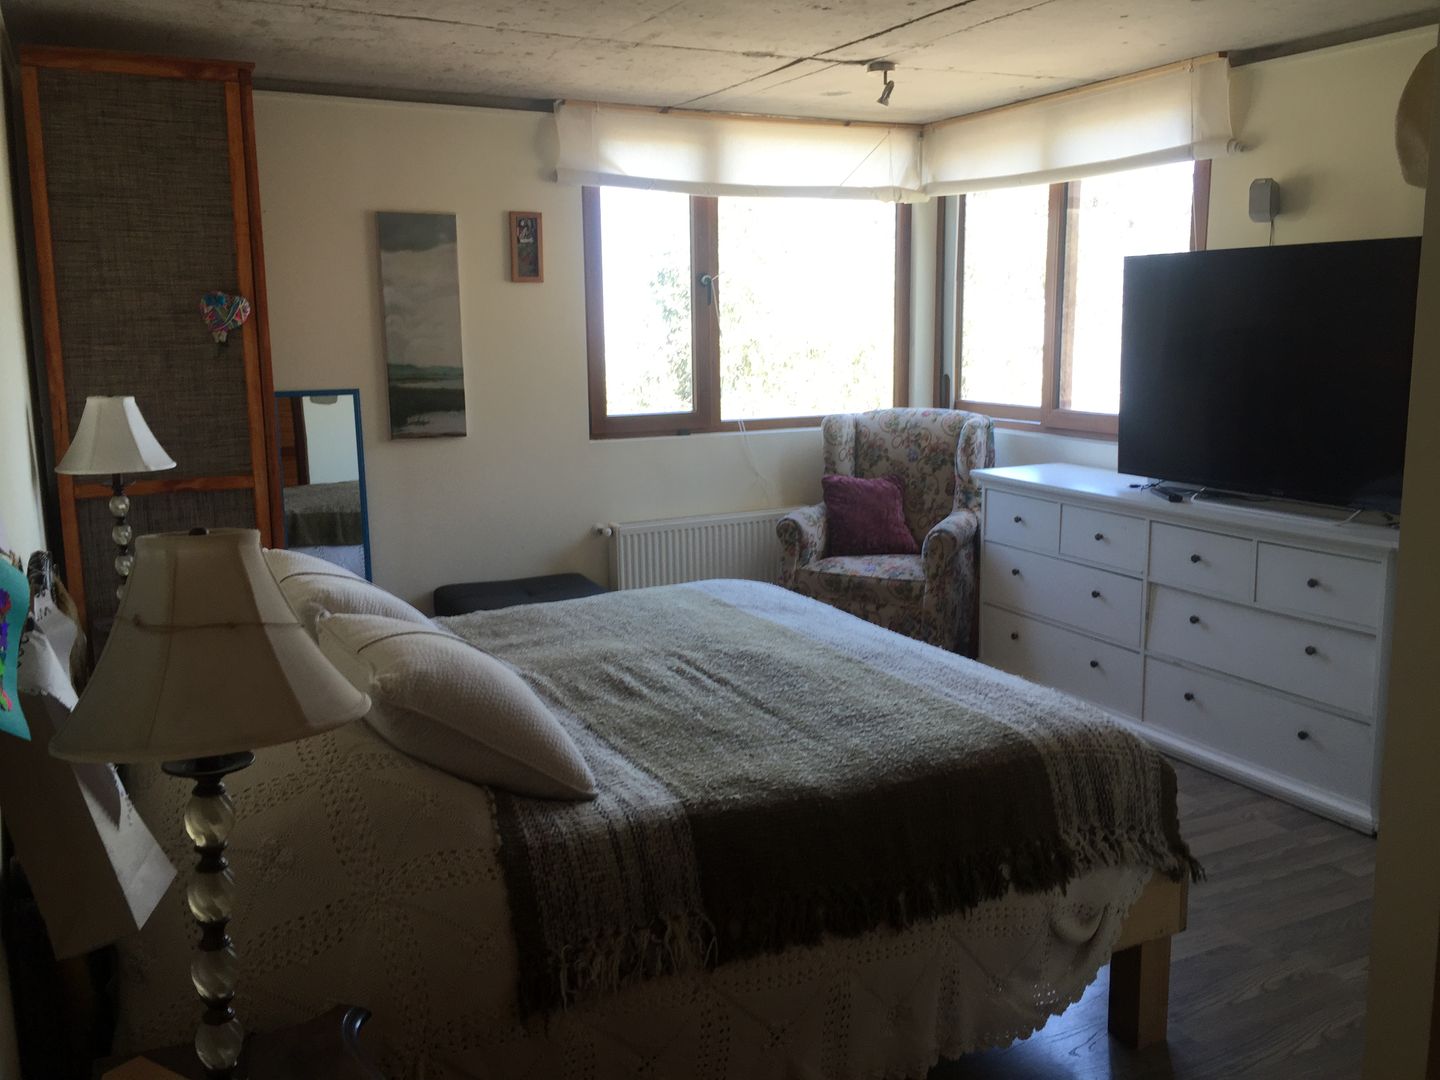 Dormitorio para relajarse en colores beige homify Dormitorios de estilo ecléctico Compuestos de madera y plástico Chiloé,relajante,cama sencilla